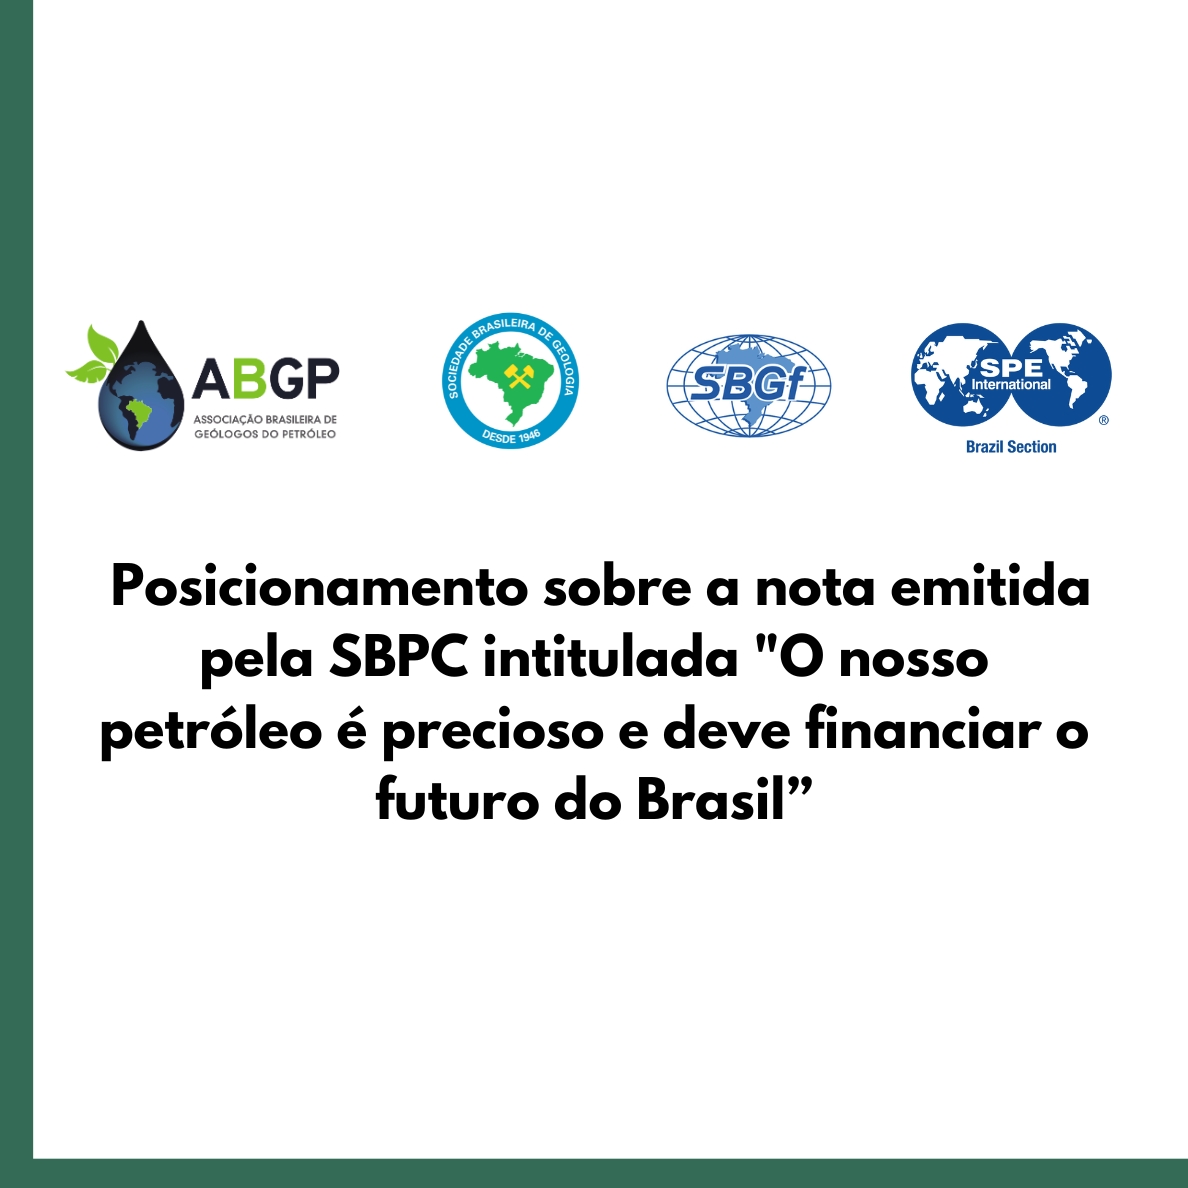 ASSOCIAÇÕES BRASILEIRAS APOIAM A EXPLORAÇÃO E PRODUÇÃO DE PETRÓLEO NA MARGEM EQUATORIAL PARA UMA TRANSIÇÃO ENERGÉTICA SUSTENTÁVEL